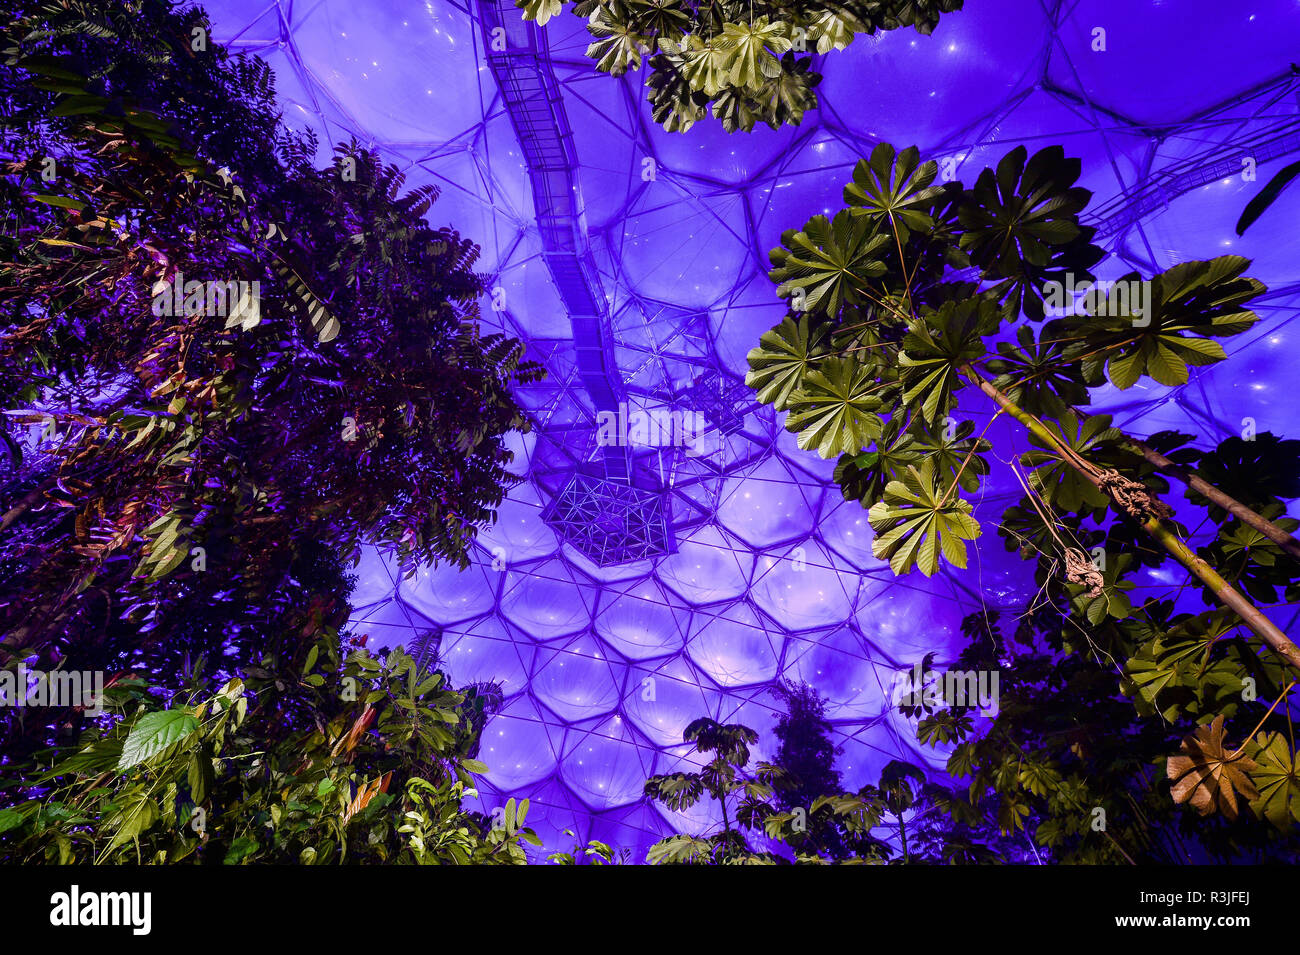 Das Dach des Rainforest biome im Eden Project, Cornwall, im violetten Licht getaucht als Beleuchtung Ingenieure und Mitarbeiter aus der grössten Indoor Regenwald der Welt bereiten sich auf ihre Weihnachten Licht zeigen, die für die Öffentlichkeit am Samstag, den 24. November geöffnet. Stockfoto